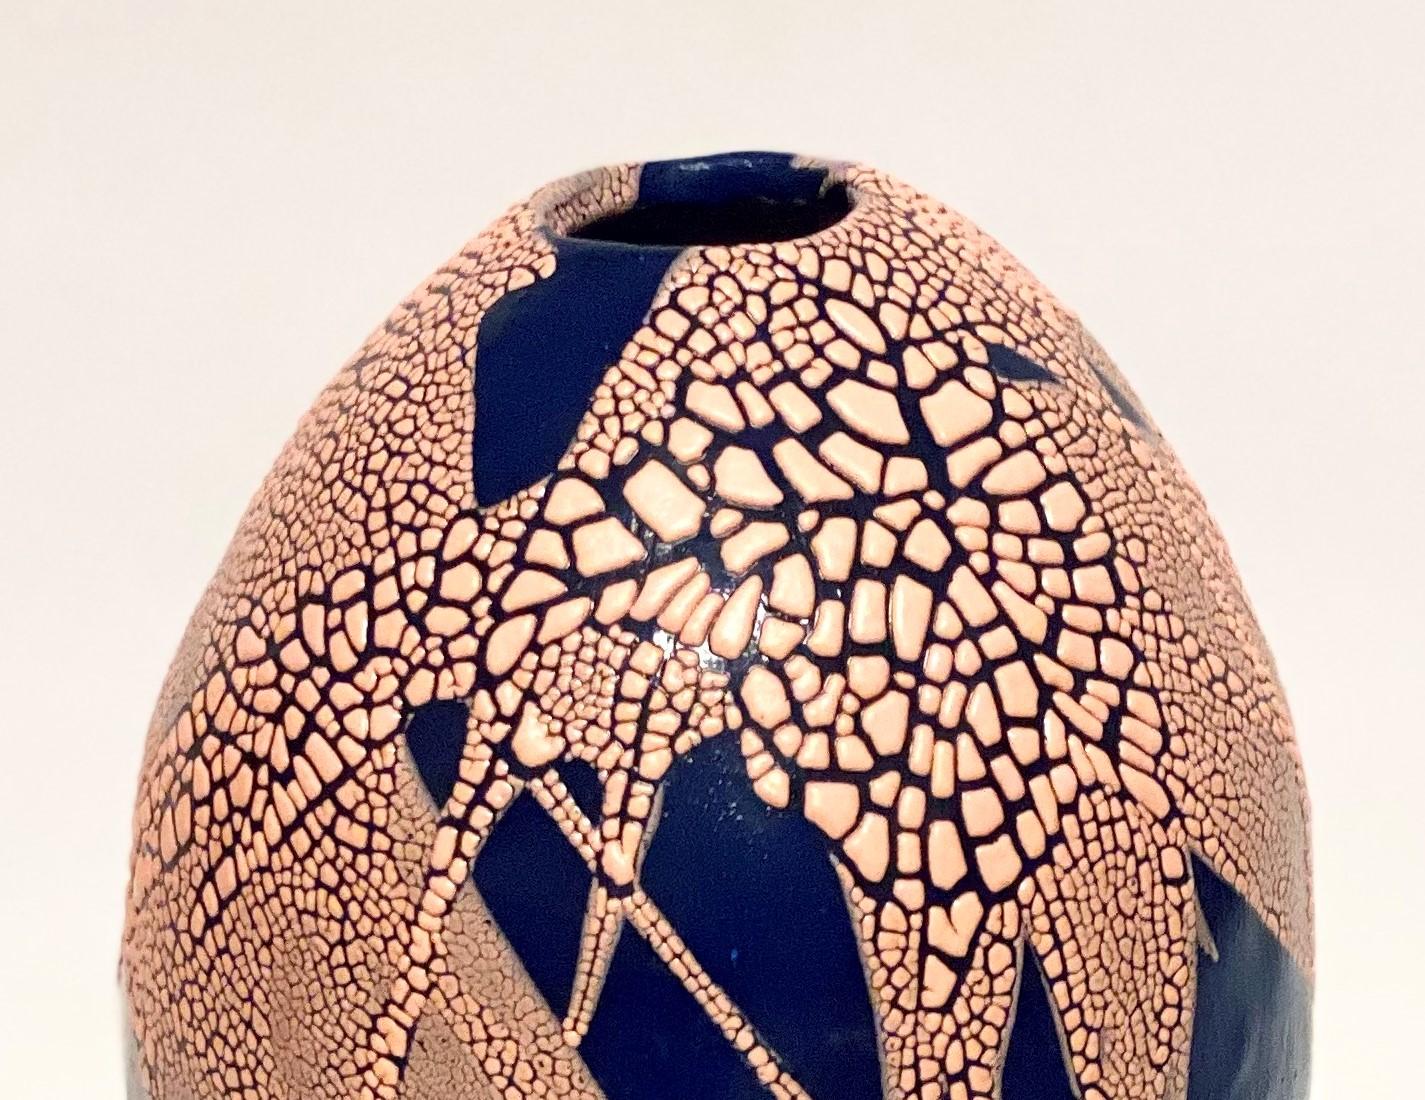 Post-Modern Blue/Pink Dragon Egg Vase by Astrid Öhman For Sale